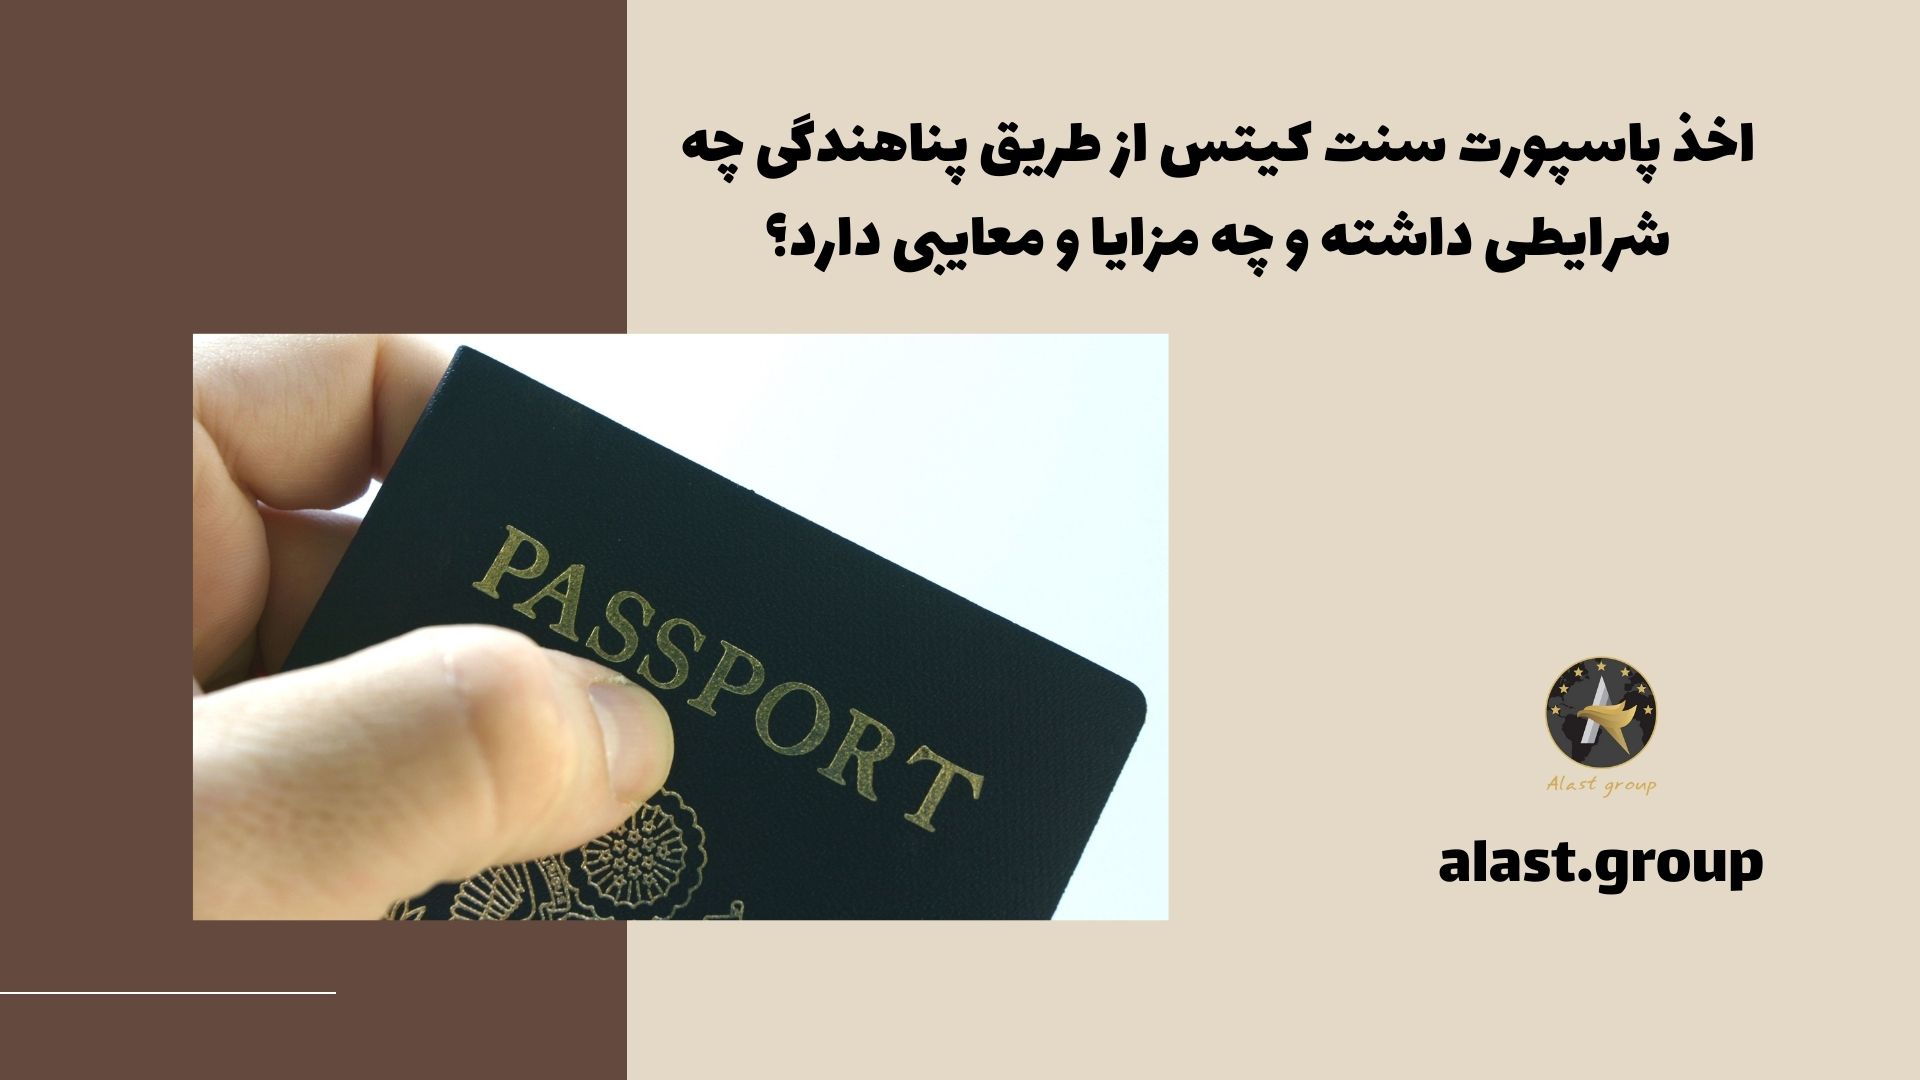 اخذ پاسپورت سنت کیتس از طریق پناهندگی چه شرایطی داشته و چه مزایا و معایبی دارد؟